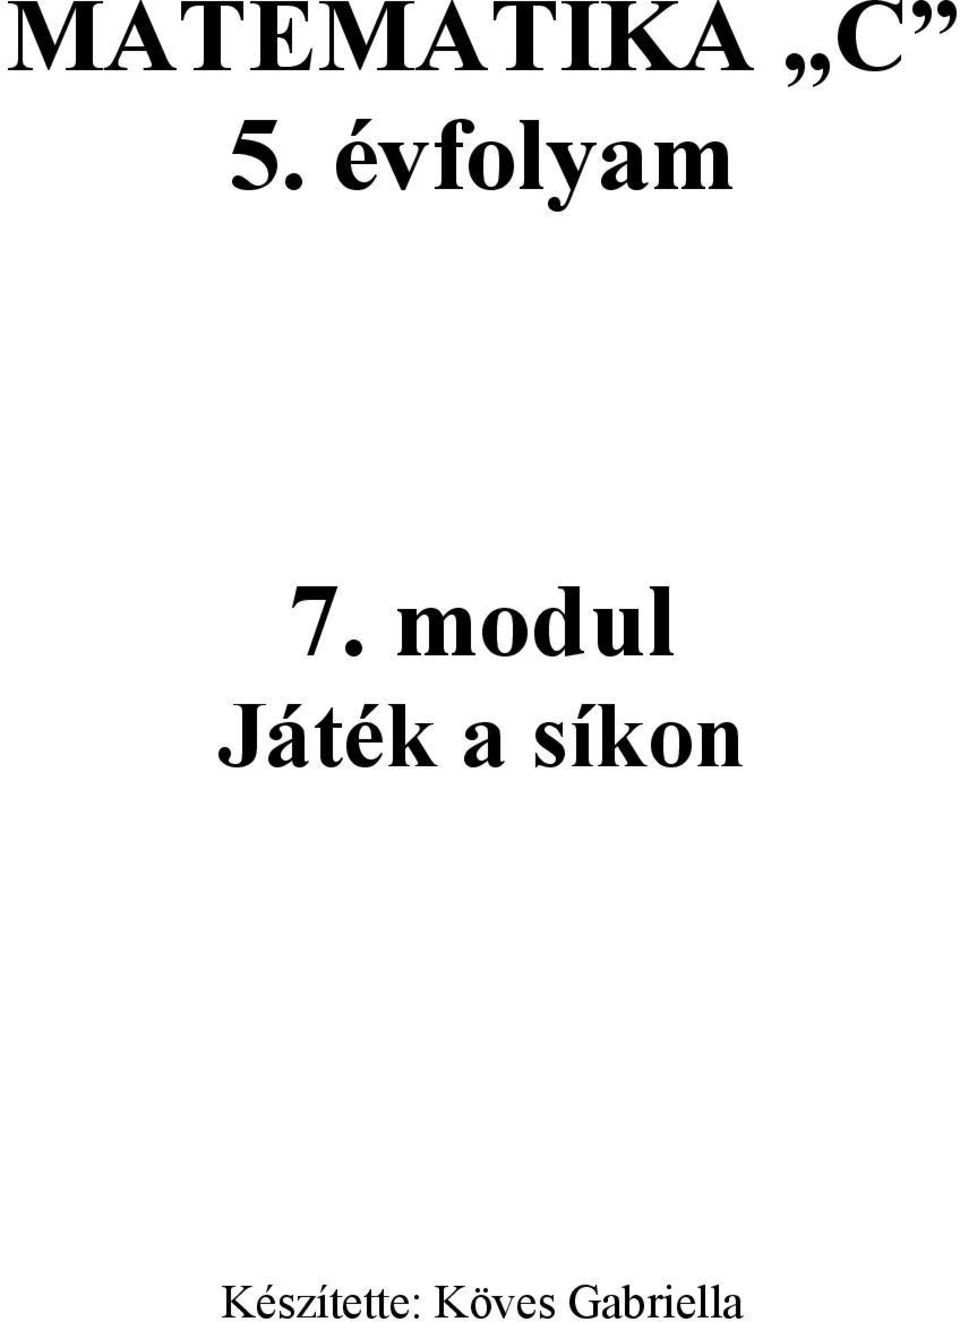 MATEMATIKA C 5. évfolyam 7. modul Játék a síkon - PDF Ingyenes letöltés